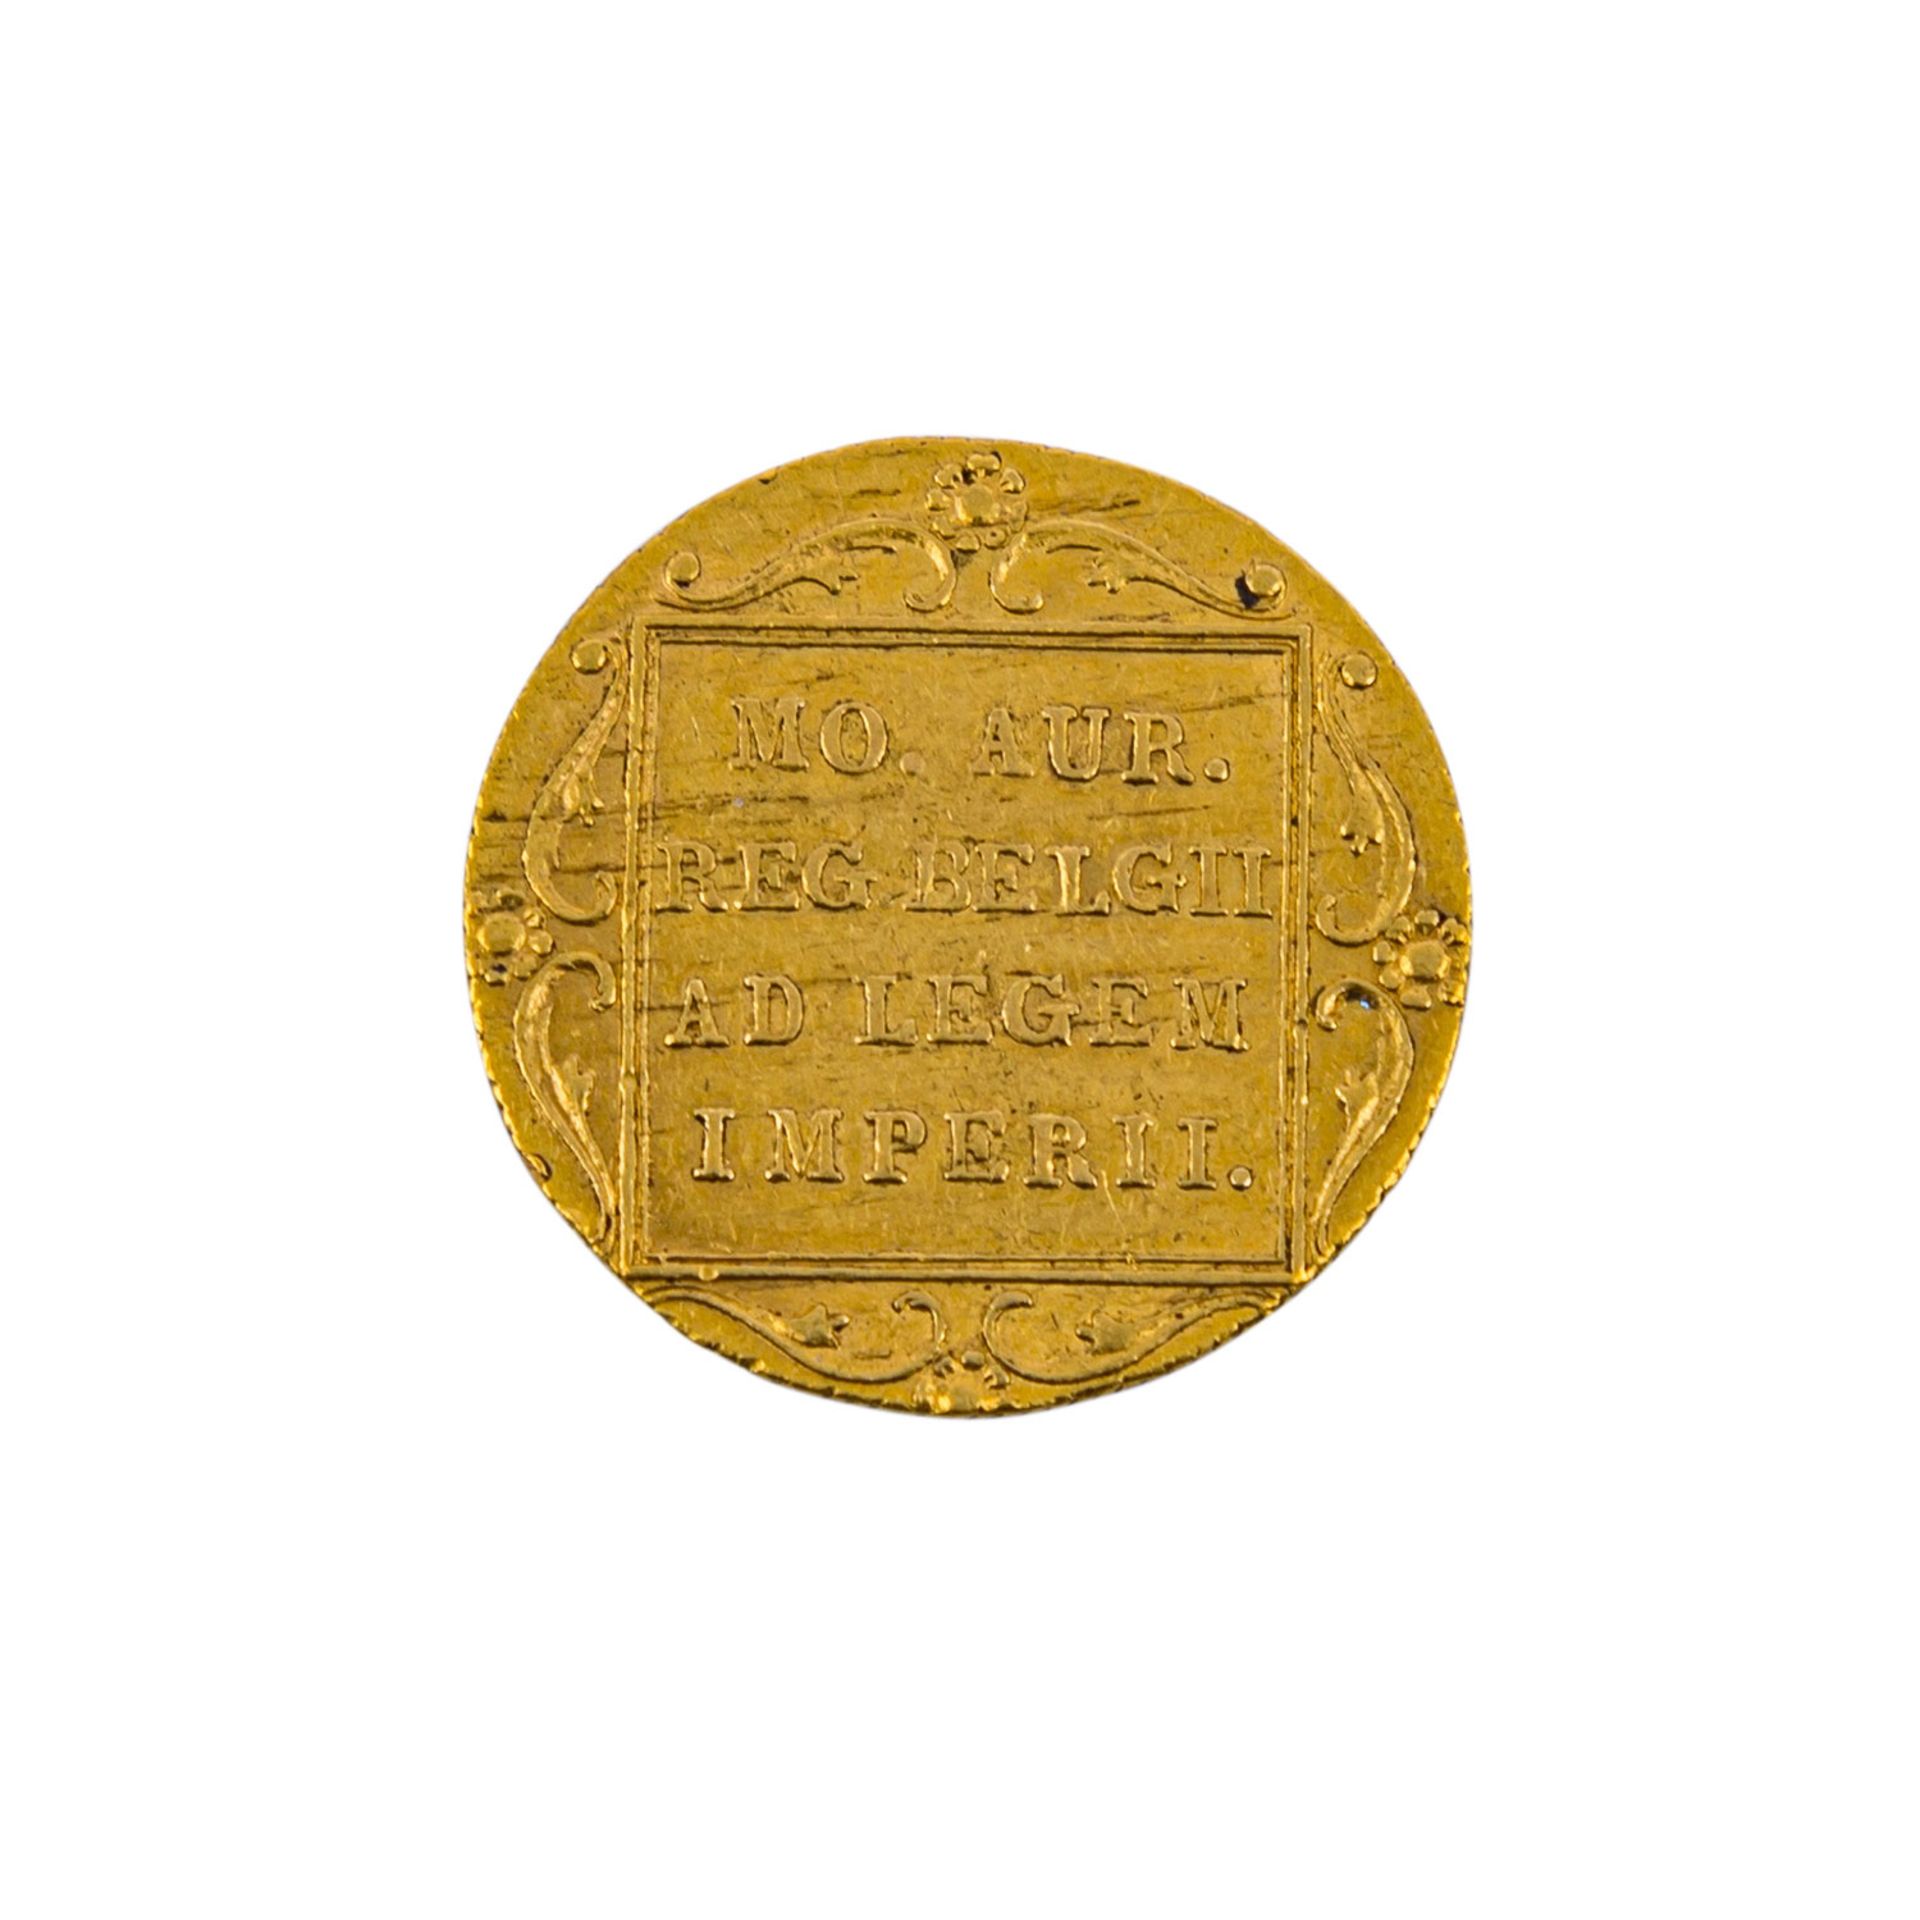 Niederlande/GOLD - 1 Ritterdukat 1818, Willem I., ss,leicht gebogen, berieben, Kratzer, Randkerbe, - Bild 2 aus 2